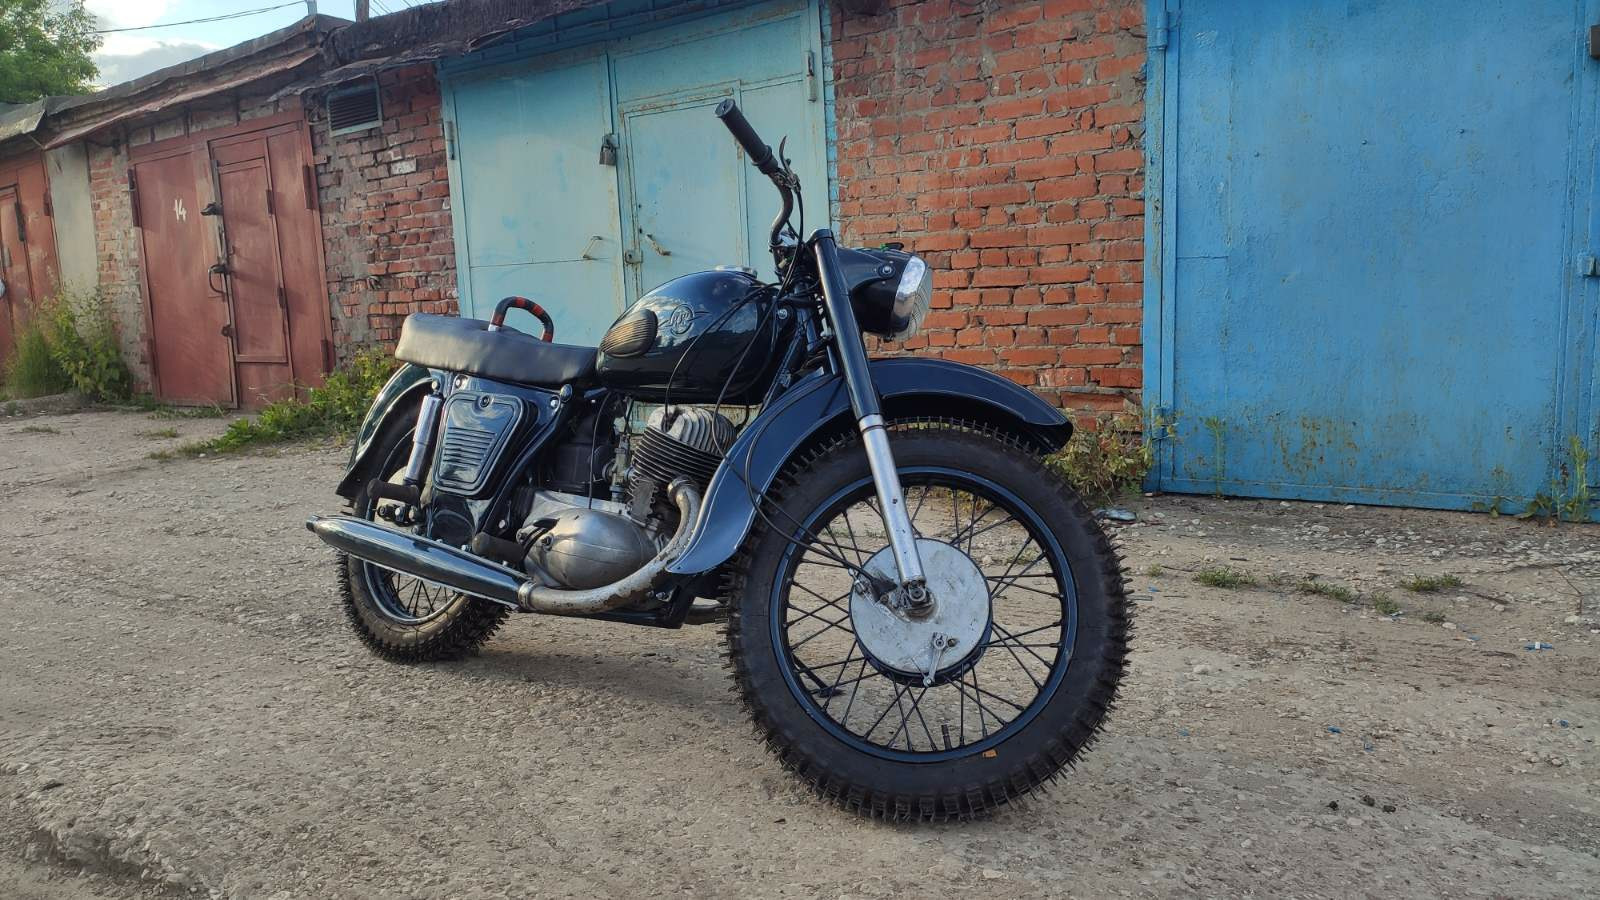 Иж юпитер 3 - характеристики и особенности легендарного мотоцикла отечественного производства